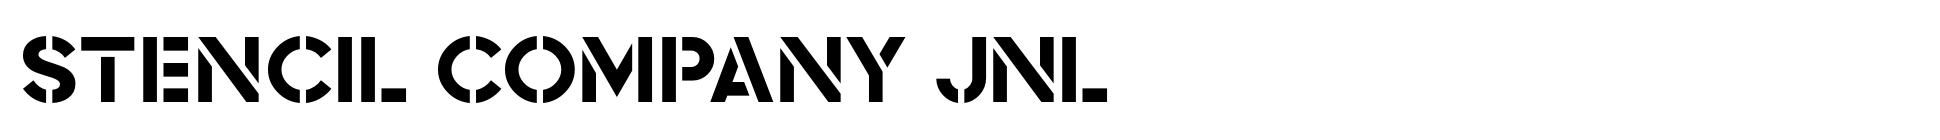 Stencil Company JNL